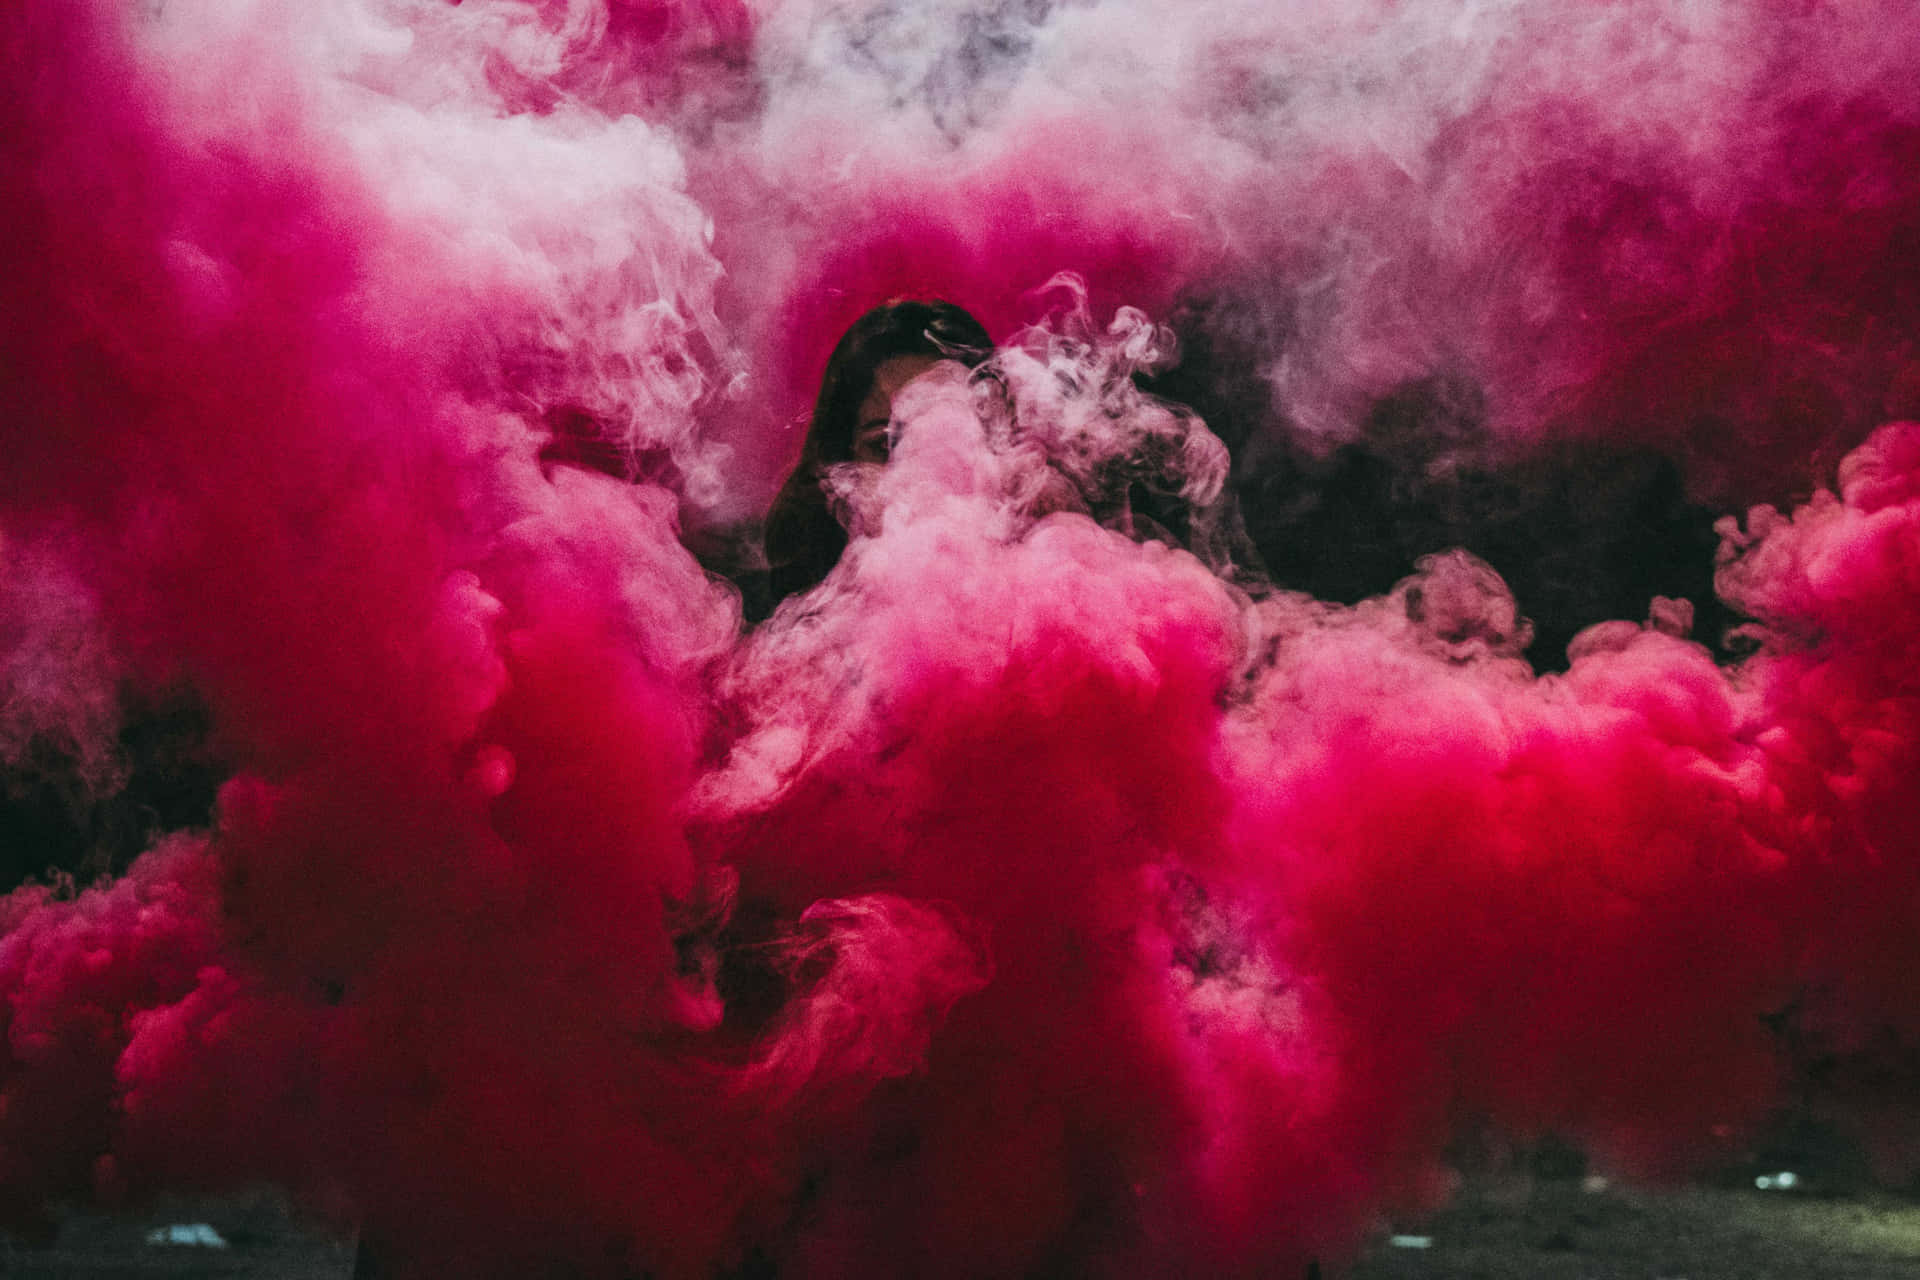 Soft pink smoke creating a beautiful pastel image